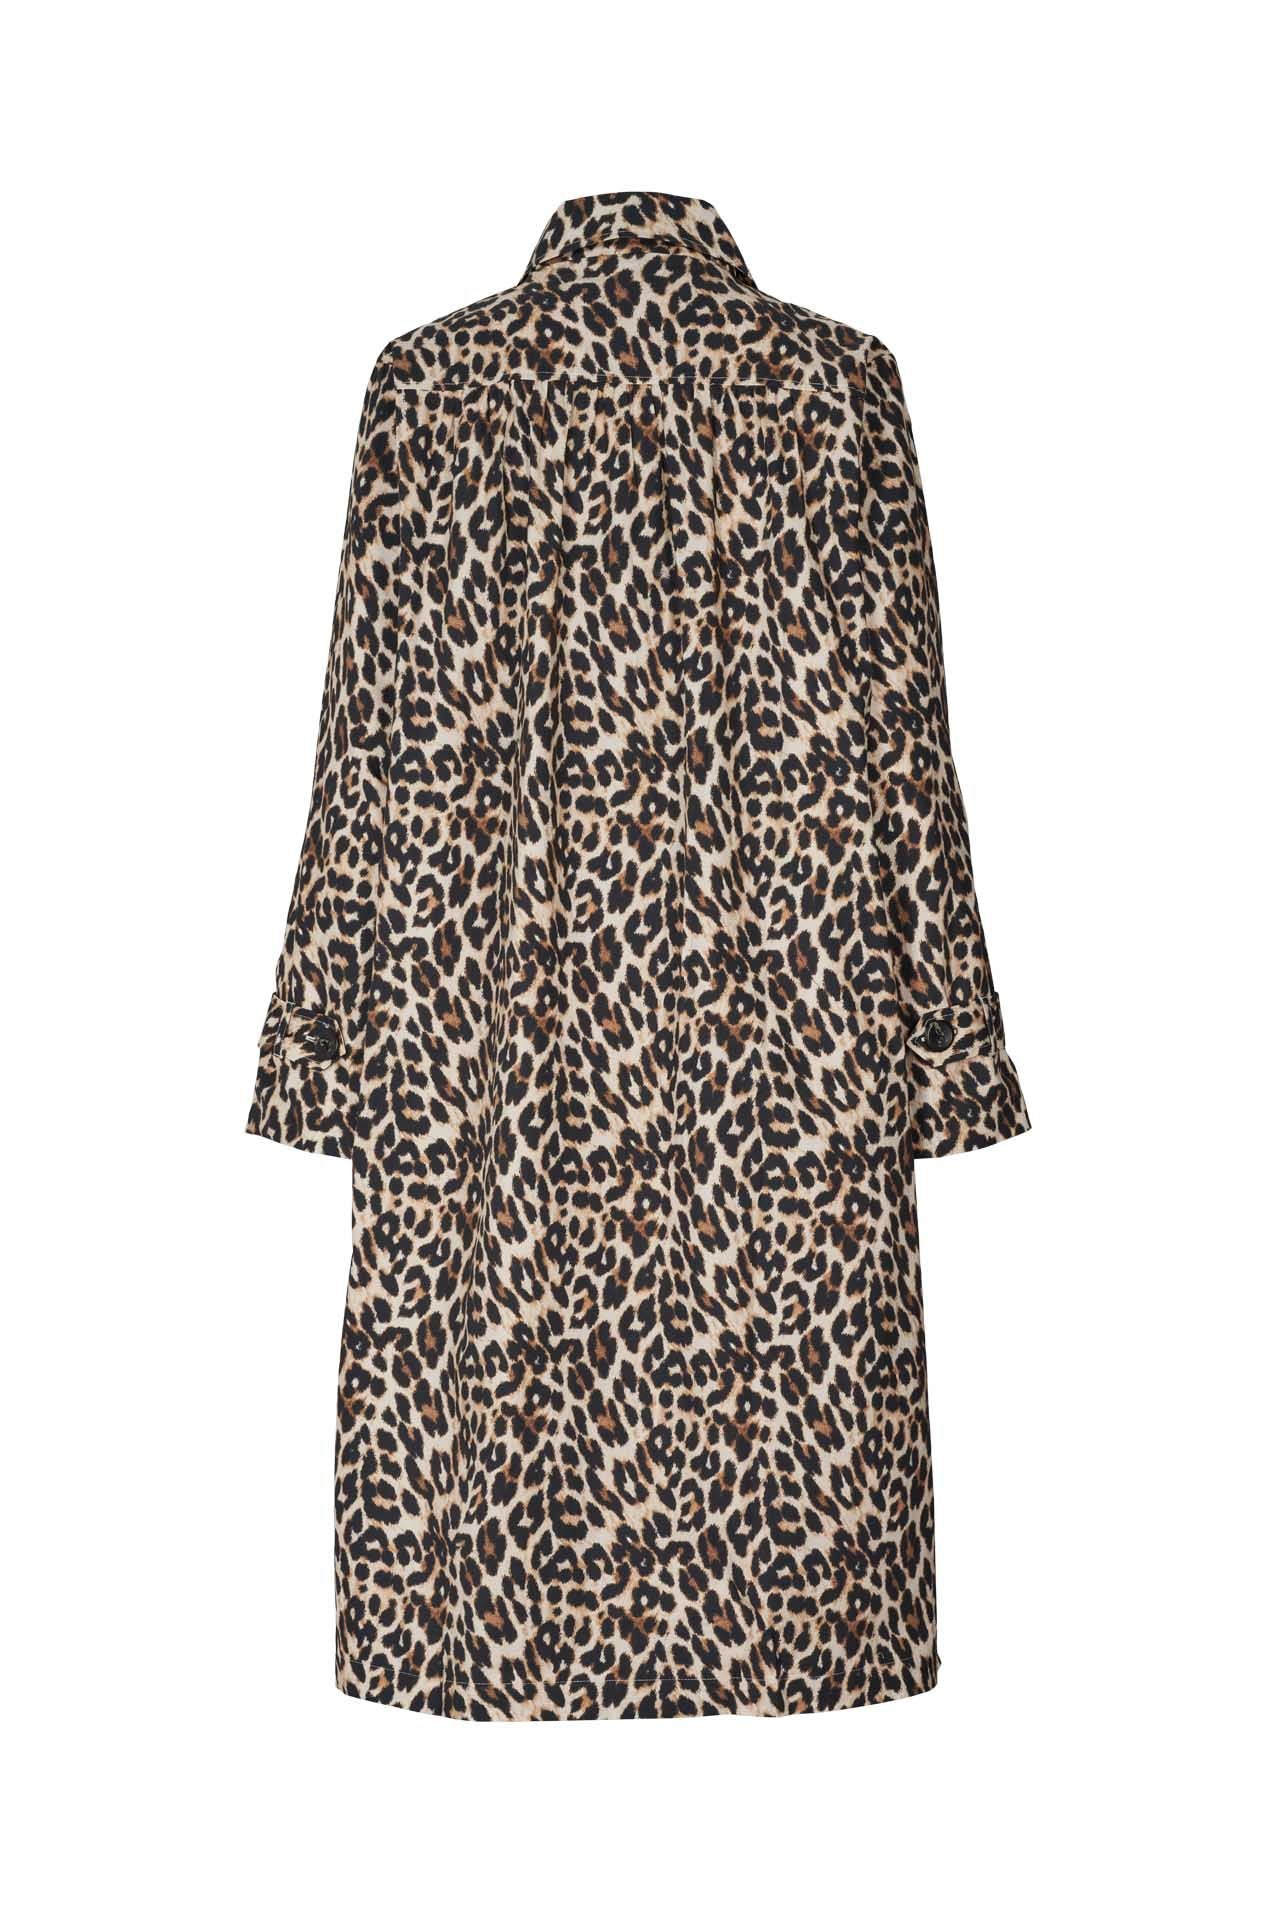 Mikala Jacket in Leopard